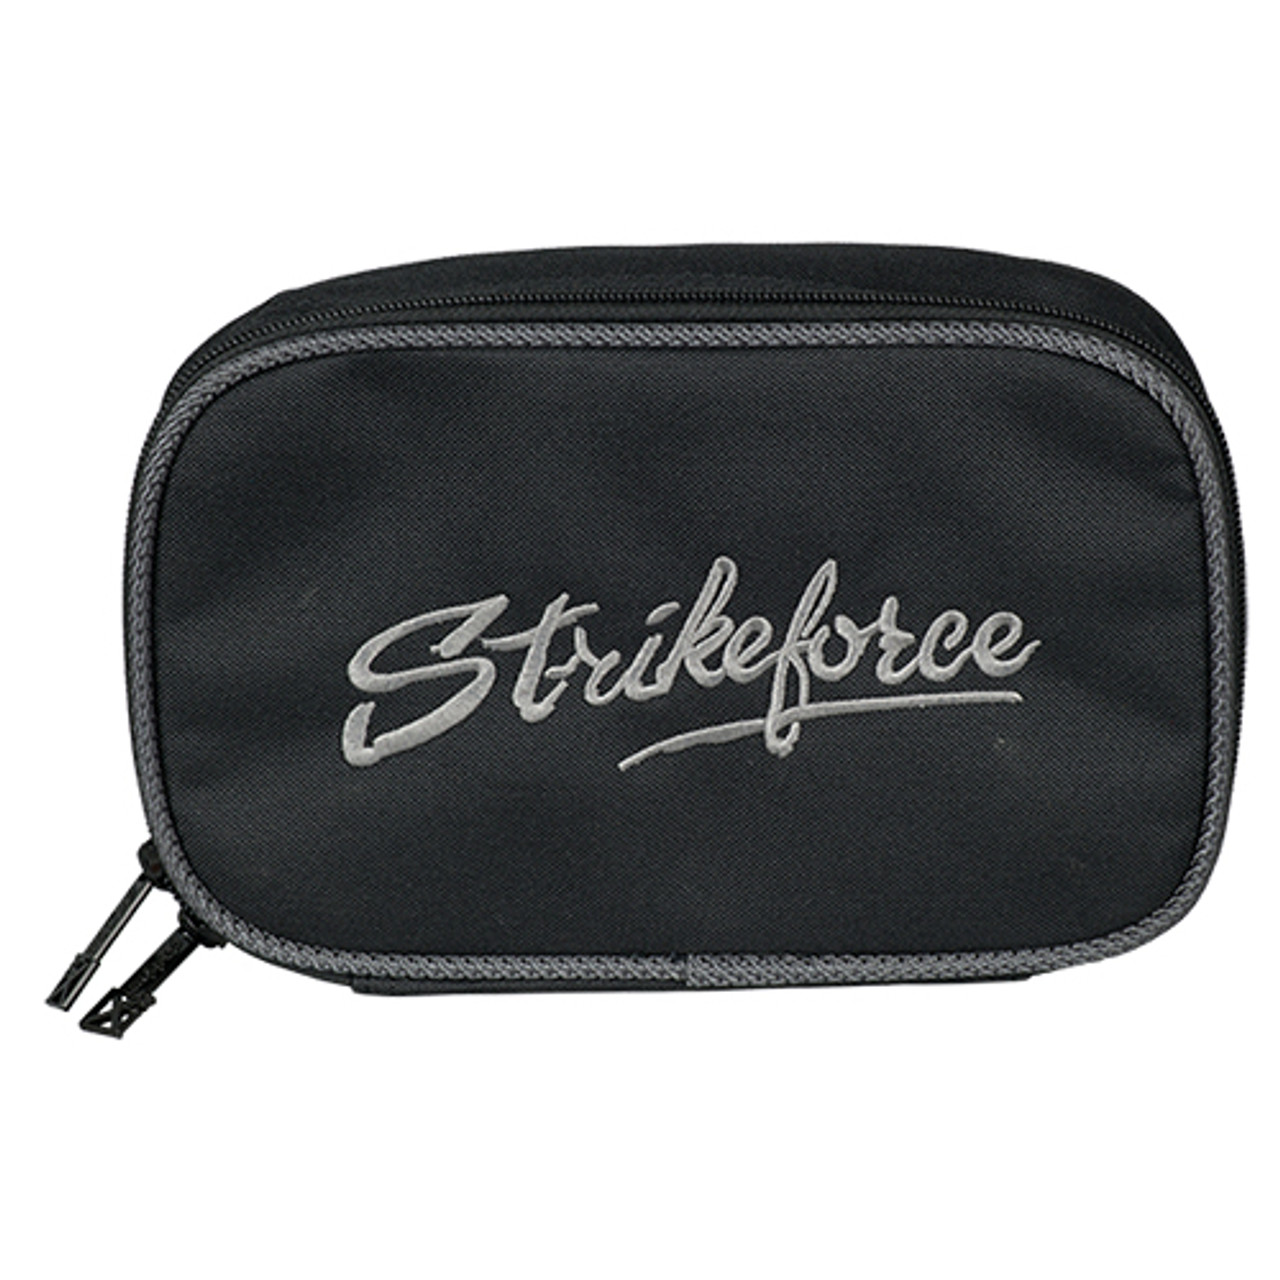 KR Strikeforce Konvoy 4 Ball Roller Bag Black/Carbon